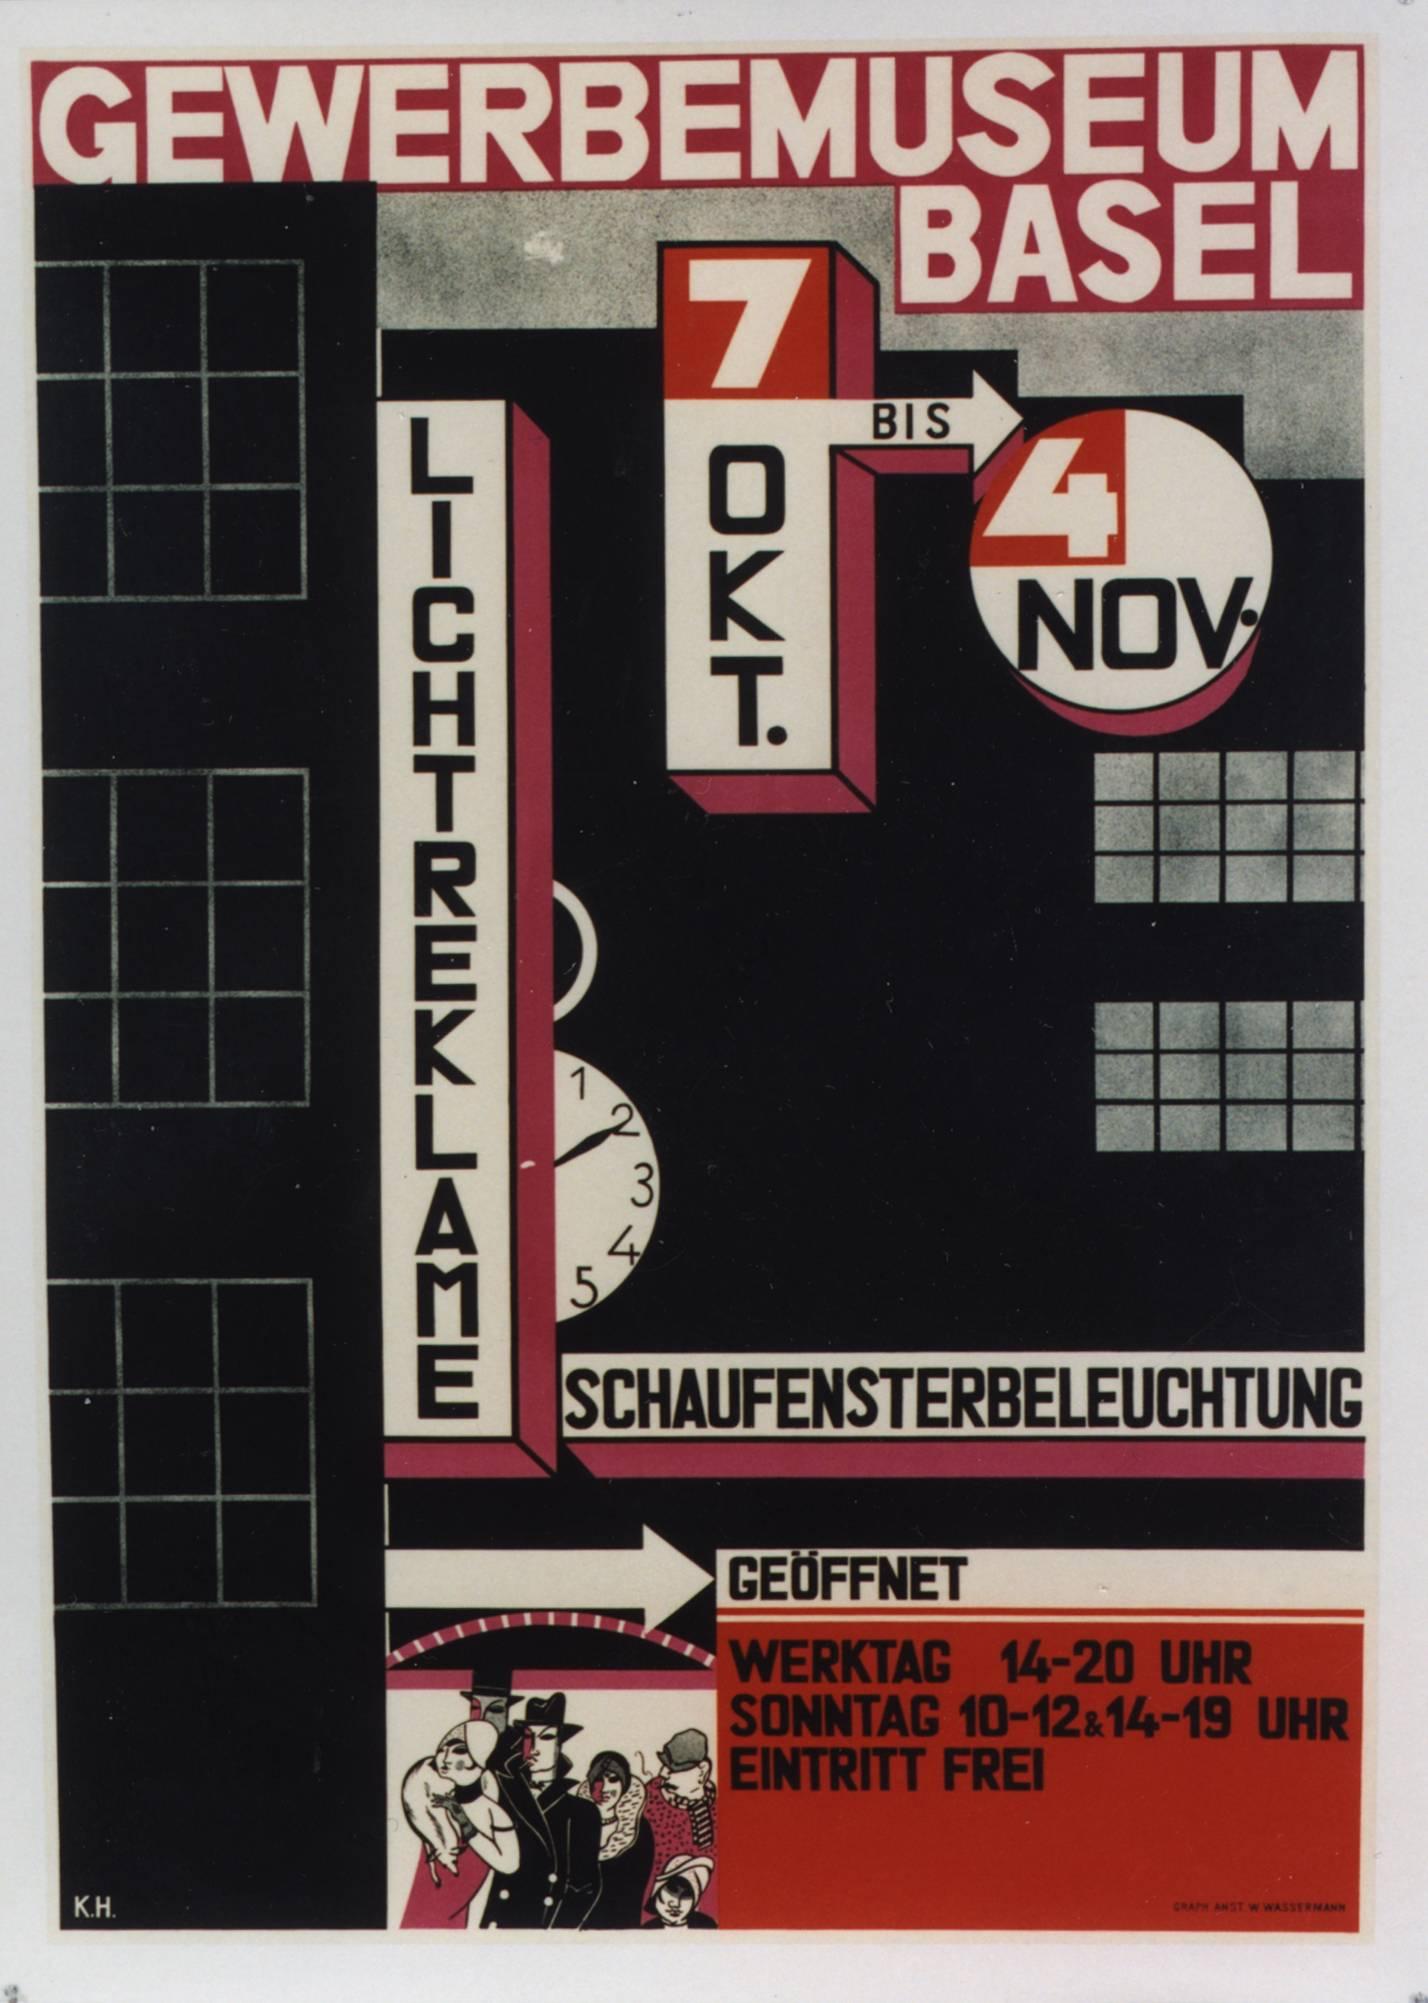 Charles [Karl] Hidenlang Abstract Print – Gewerbemuseum, Basel/Licht Reklame. 1928. 